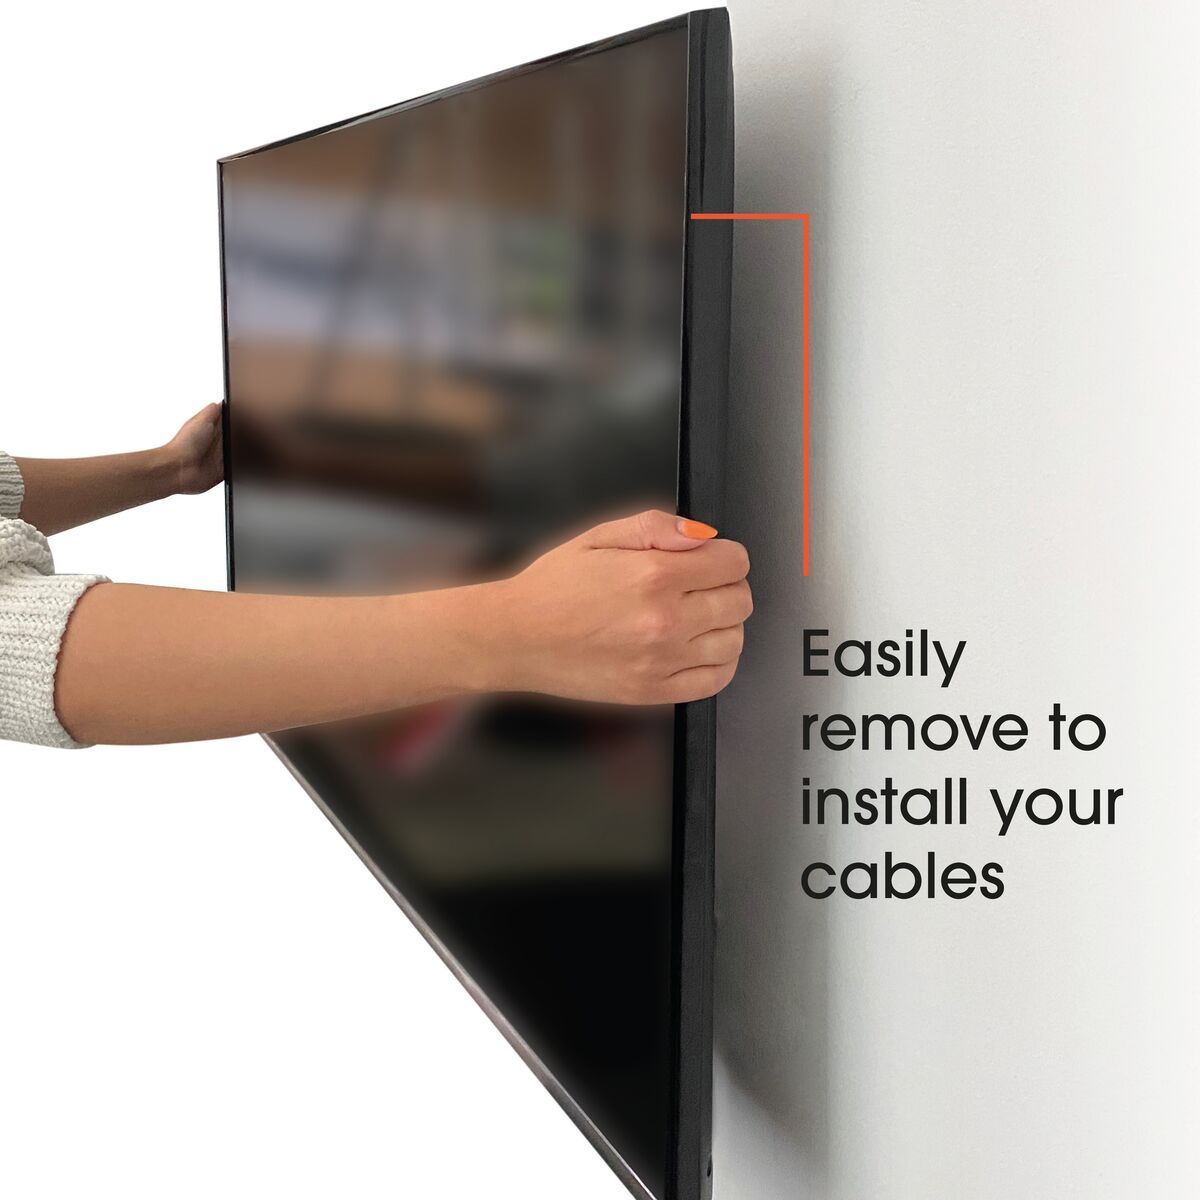 Vogel's MA3010 Neigbare TV-Wandhalterung - Geeignet für Fernseher von 32 bis 65 Zoll und einem Gewicht bis zu Bis zu 10° neigbar - USP